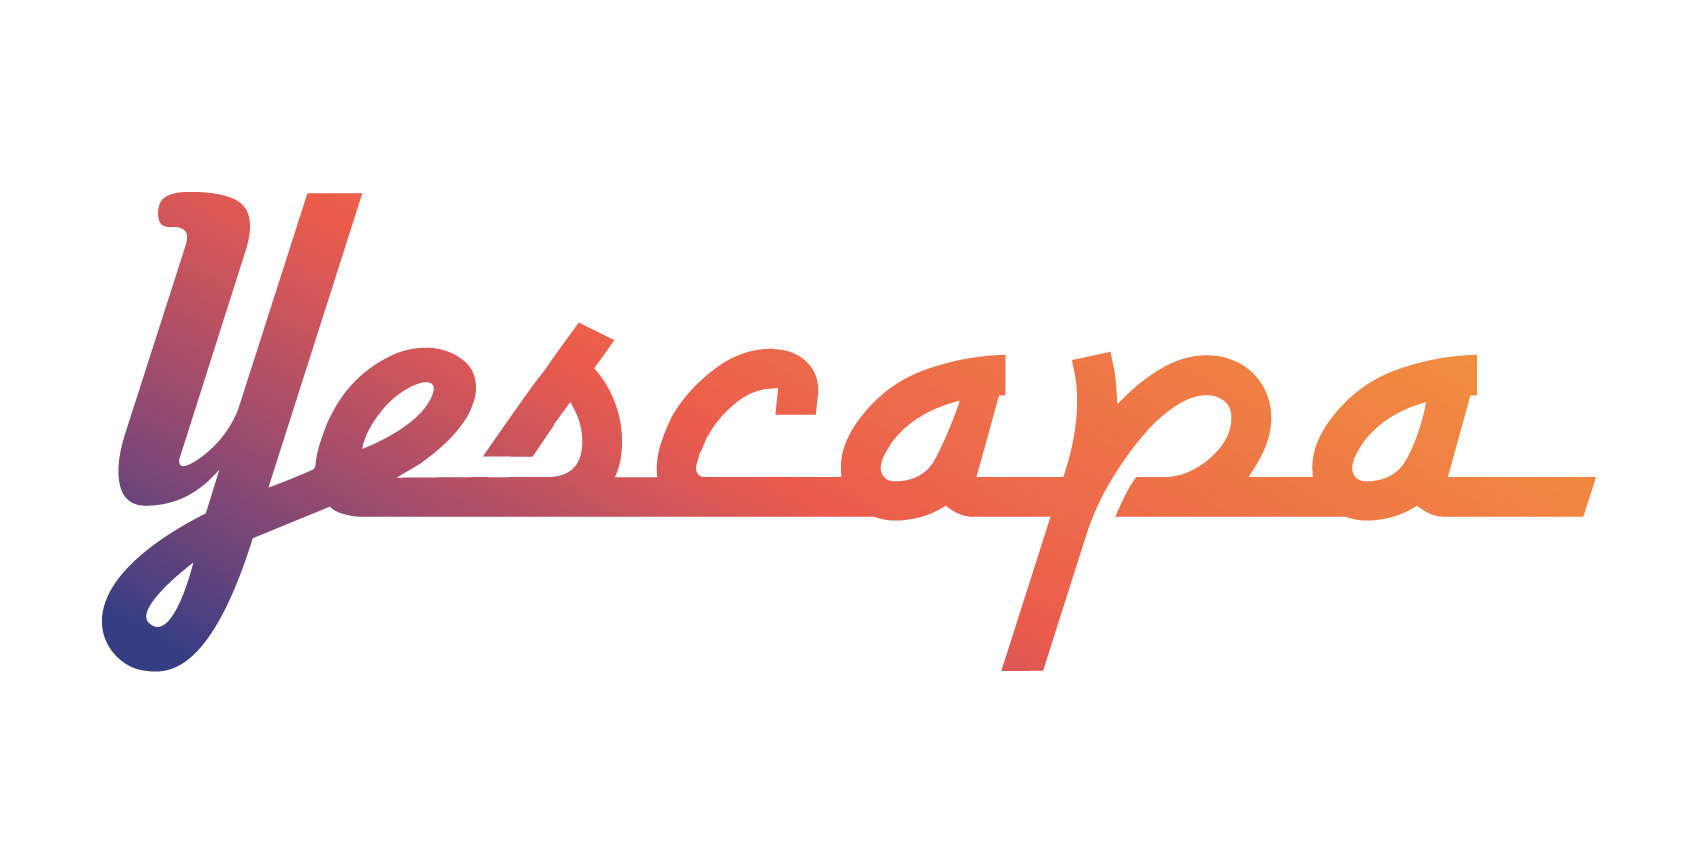 Yescapa logo